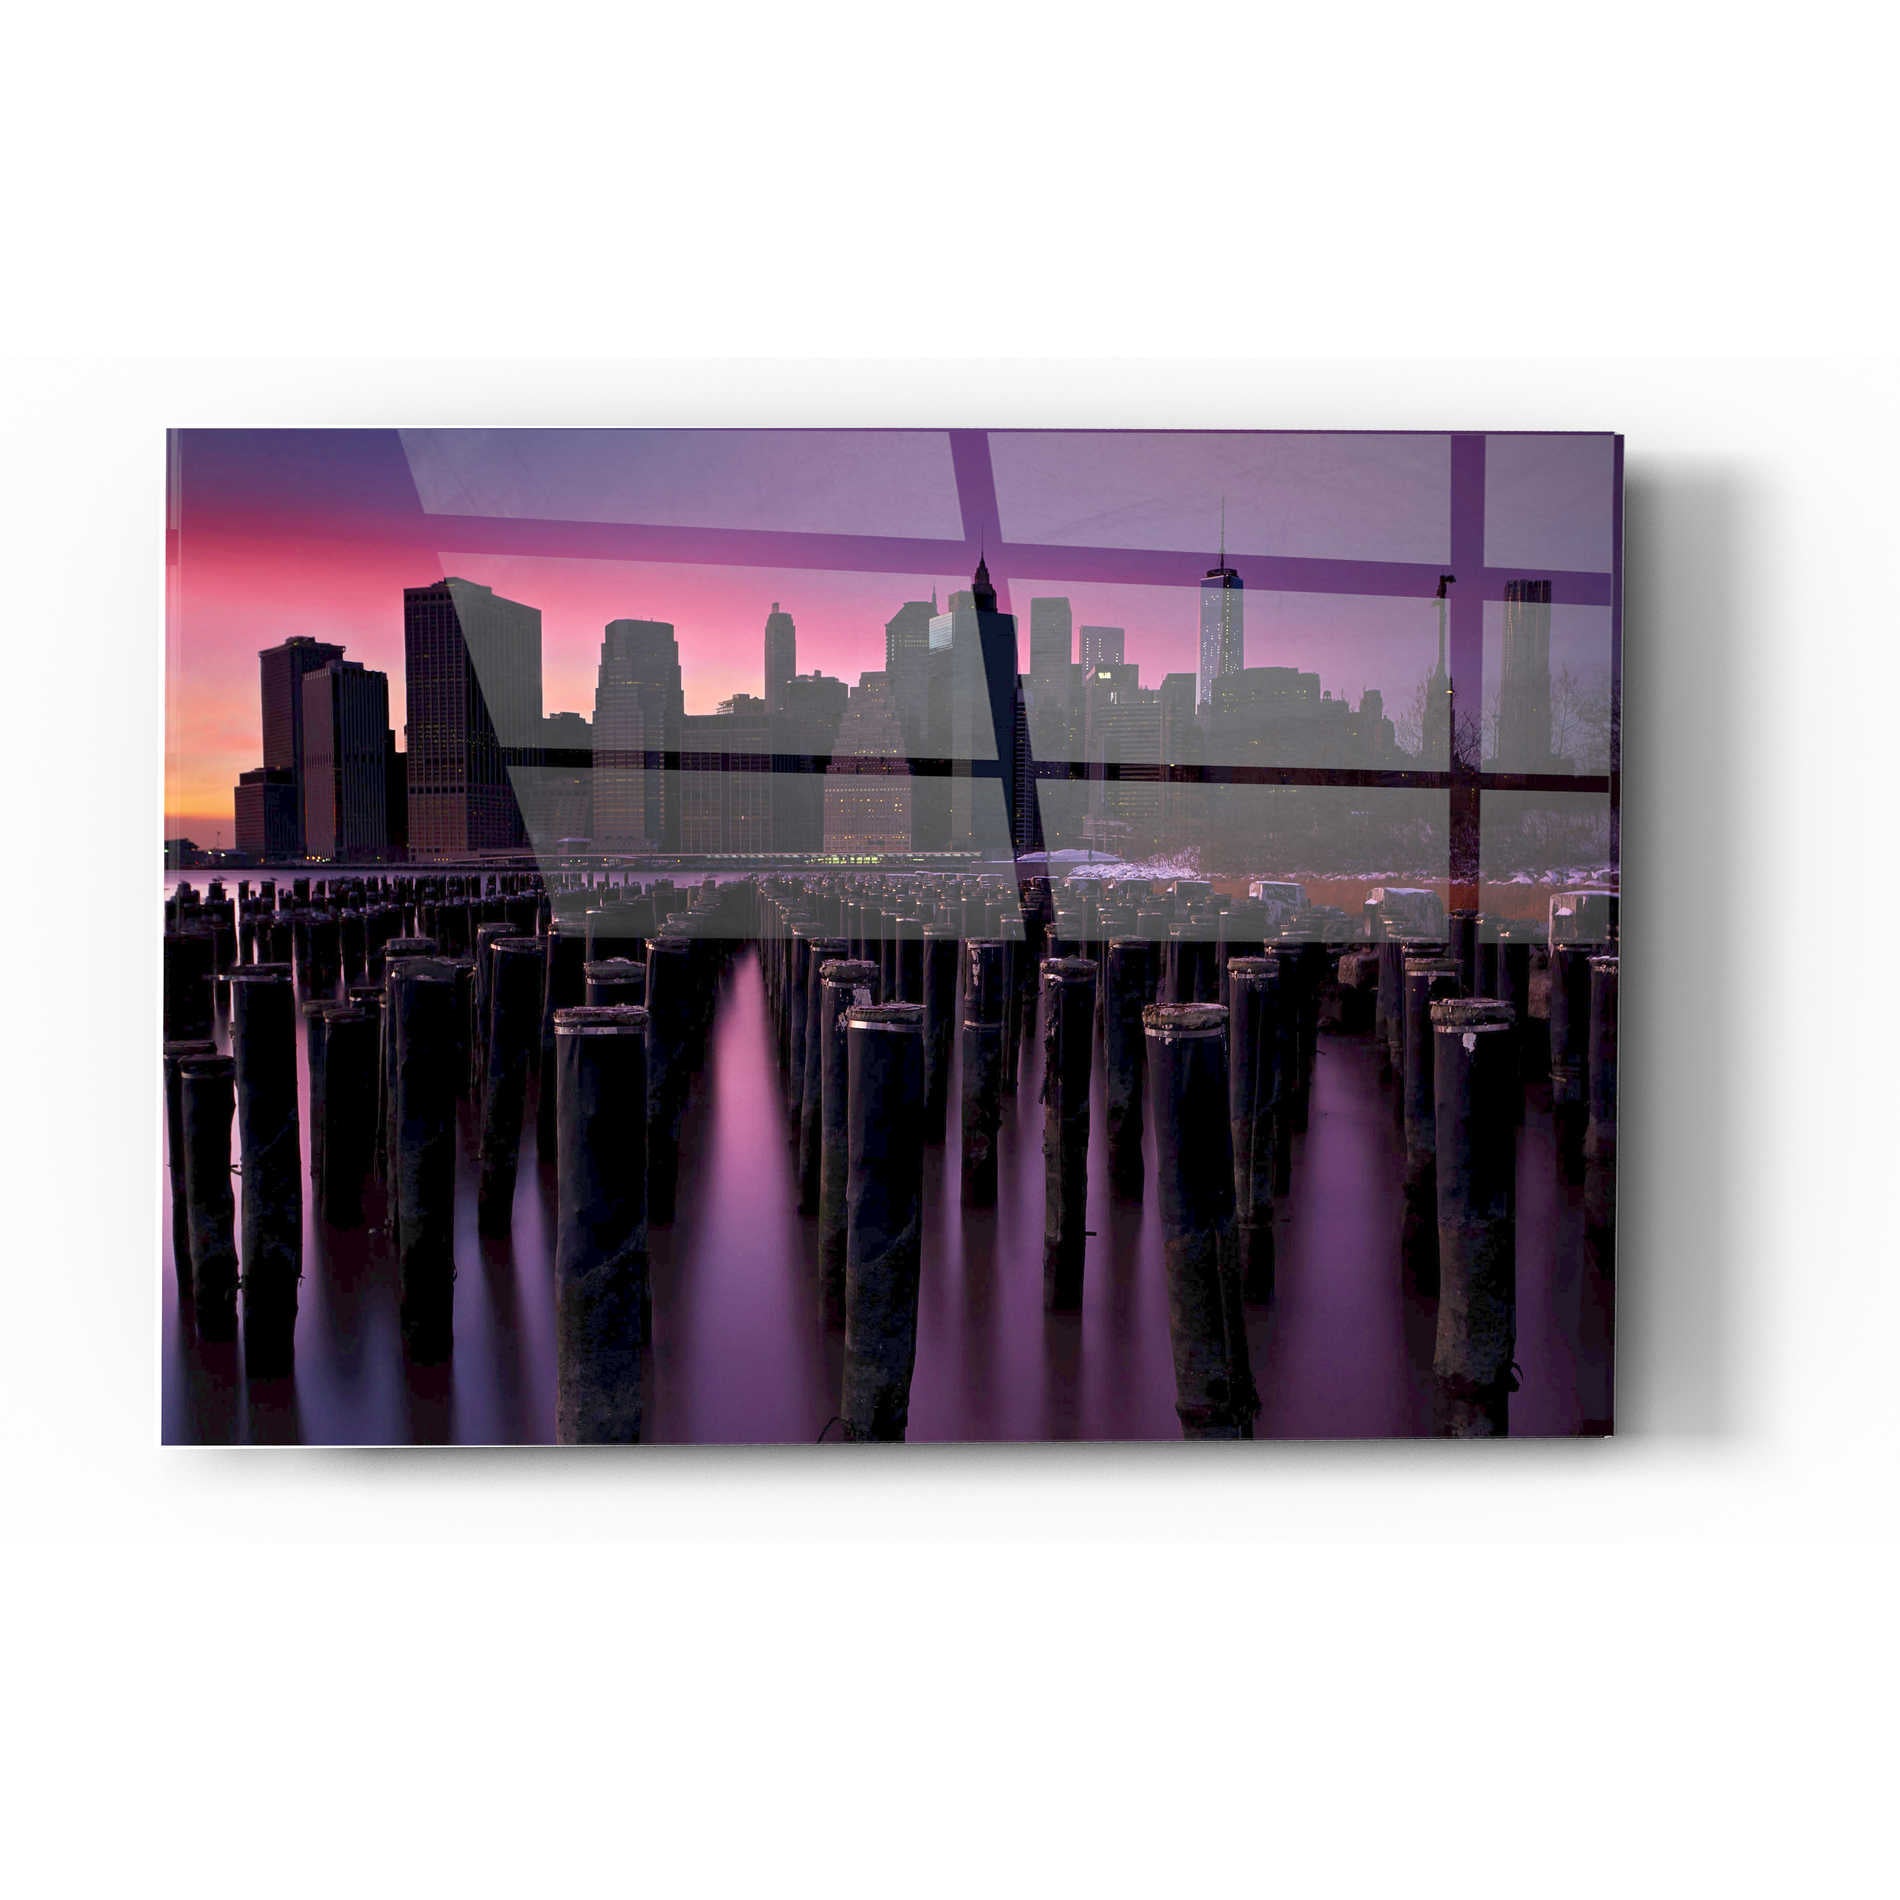 Epic Art 'Manhattan Glow' by Katherine Gendreau, Acrylic Glass Wall Art,24x36